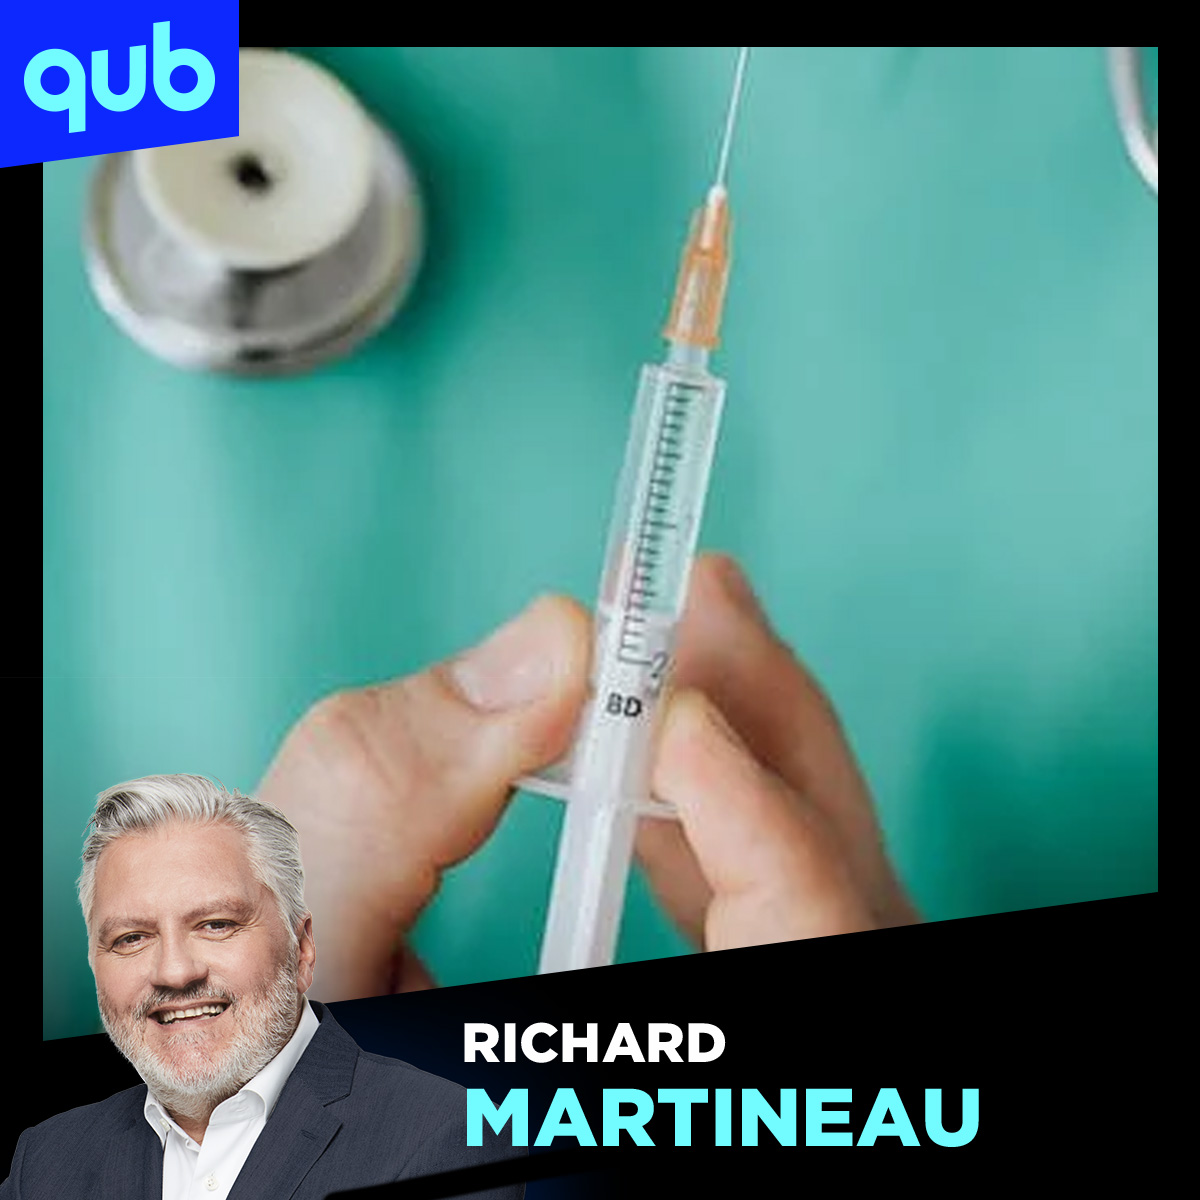 Québec, champion de l’aide médicale à mourir : le système de santé ne répond-il pas aux besoins de la population?